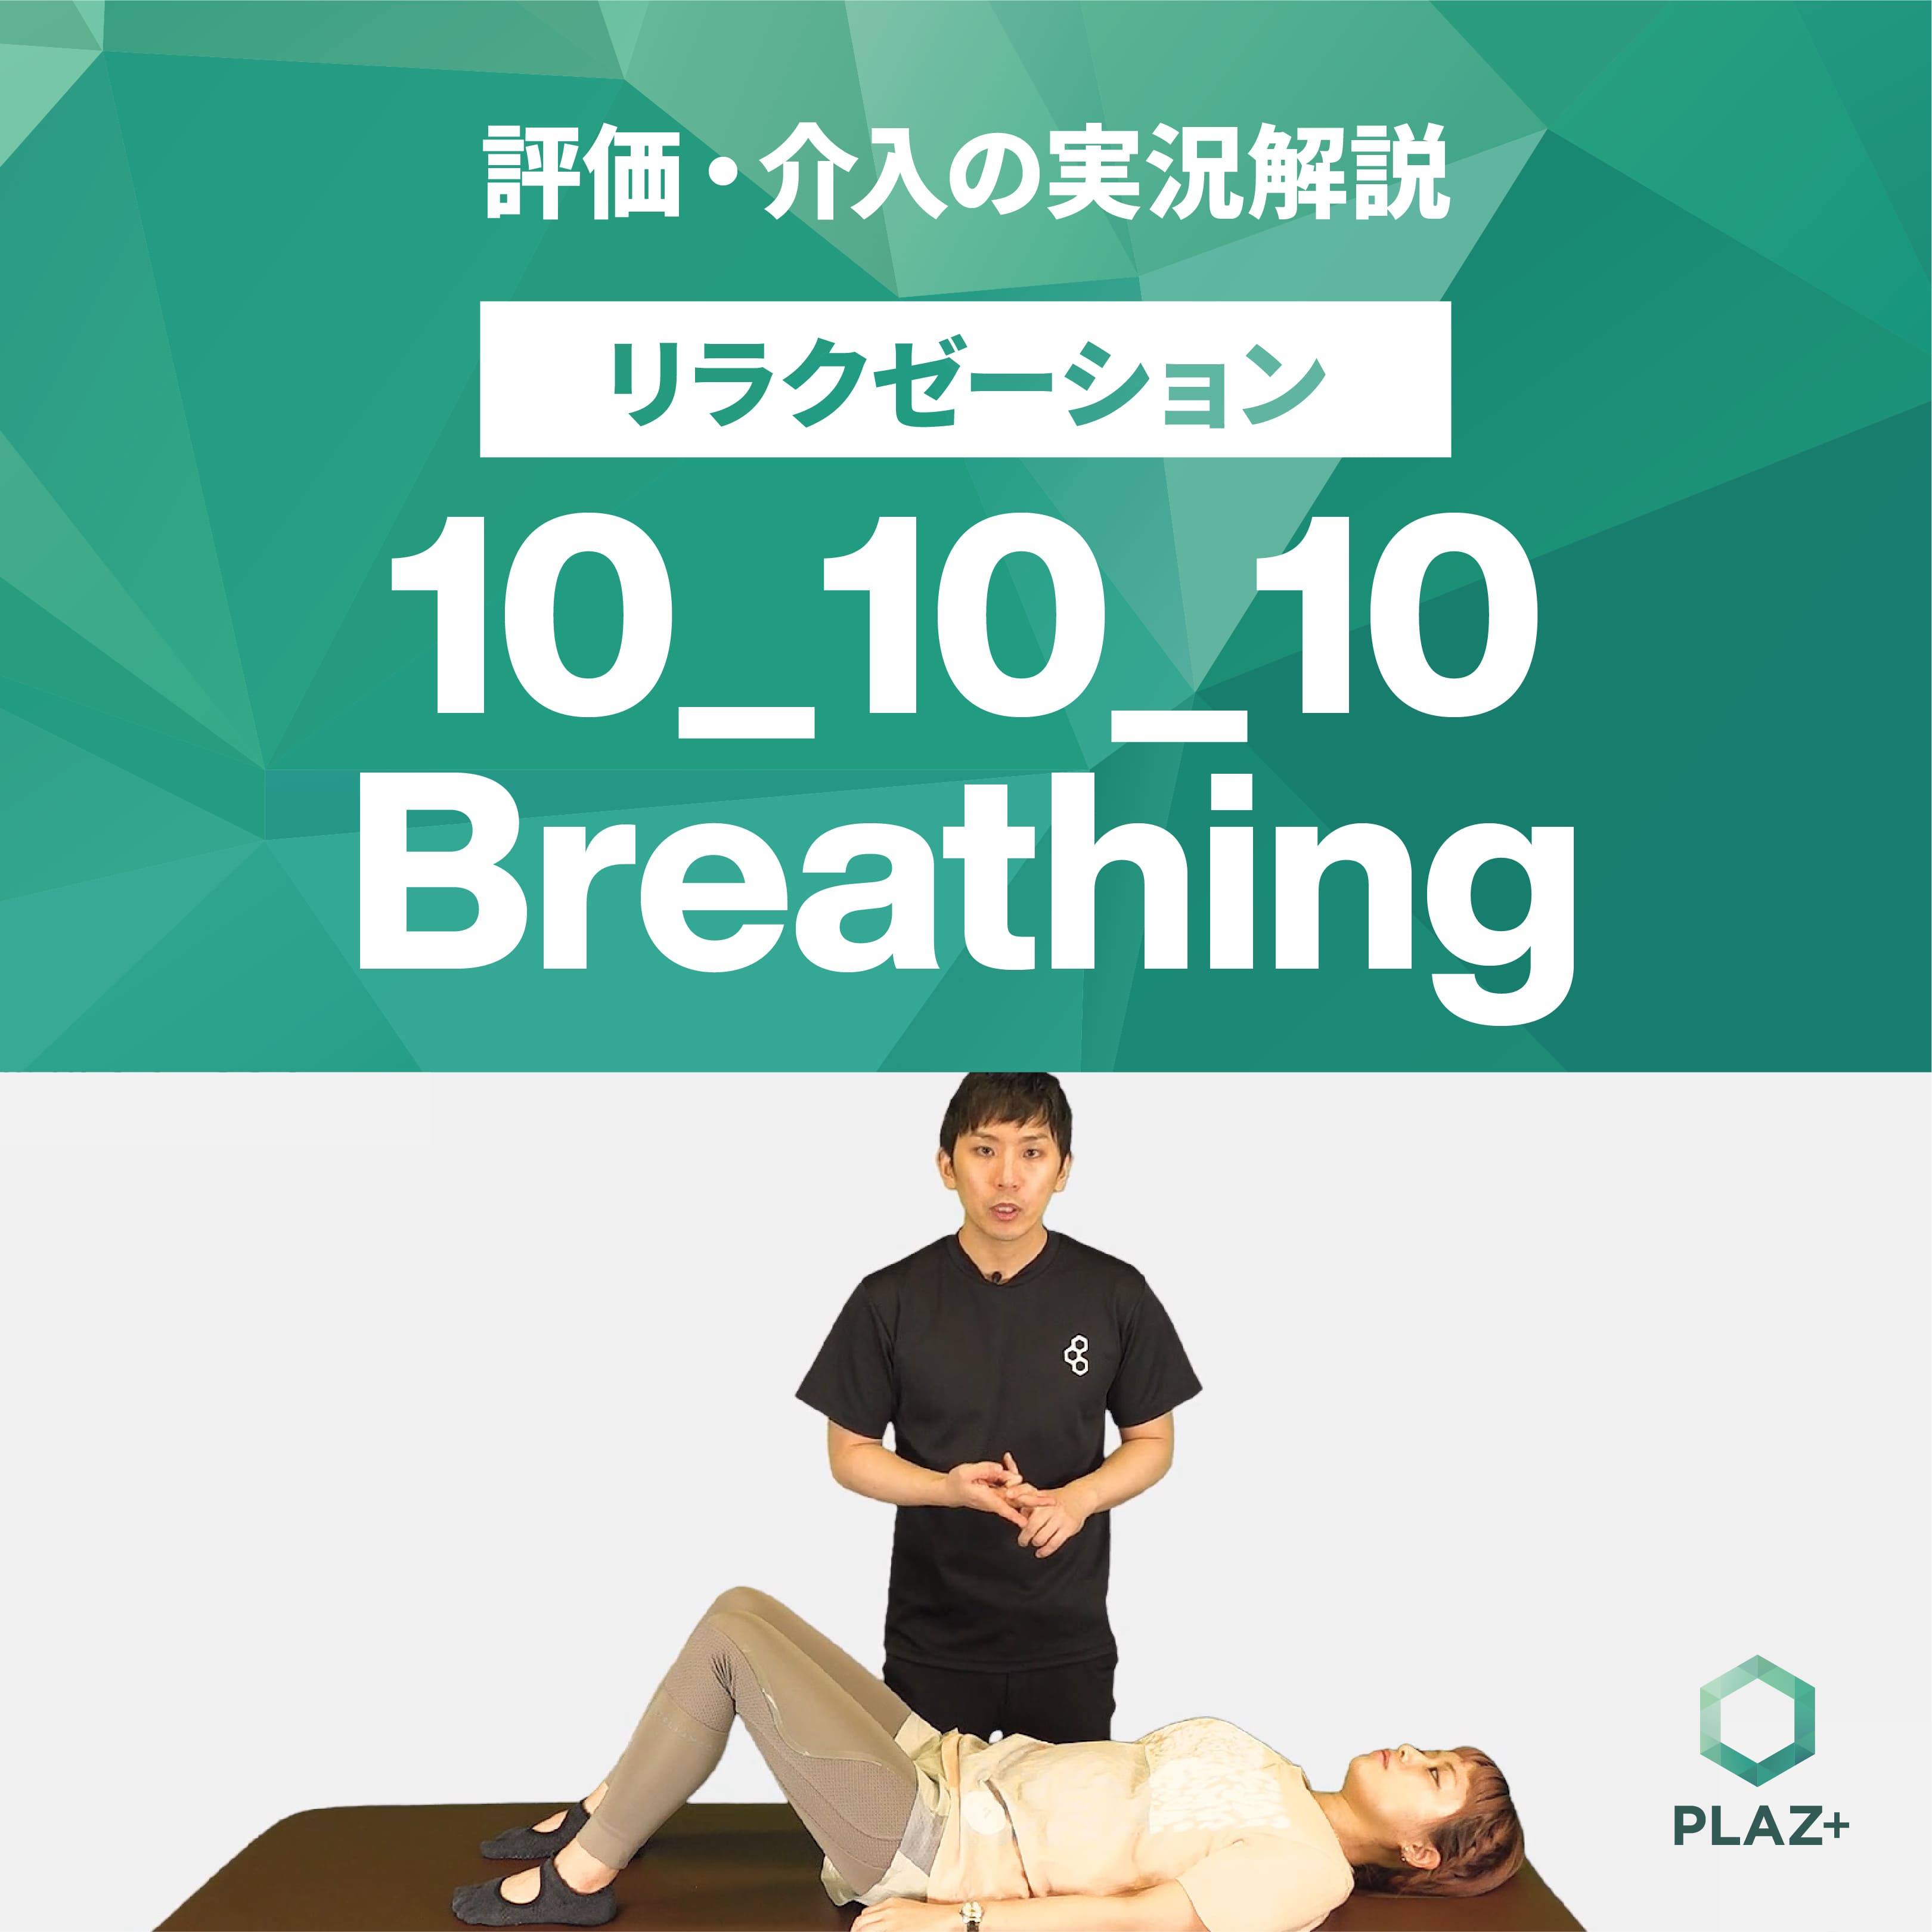 10_10_10 Breathing